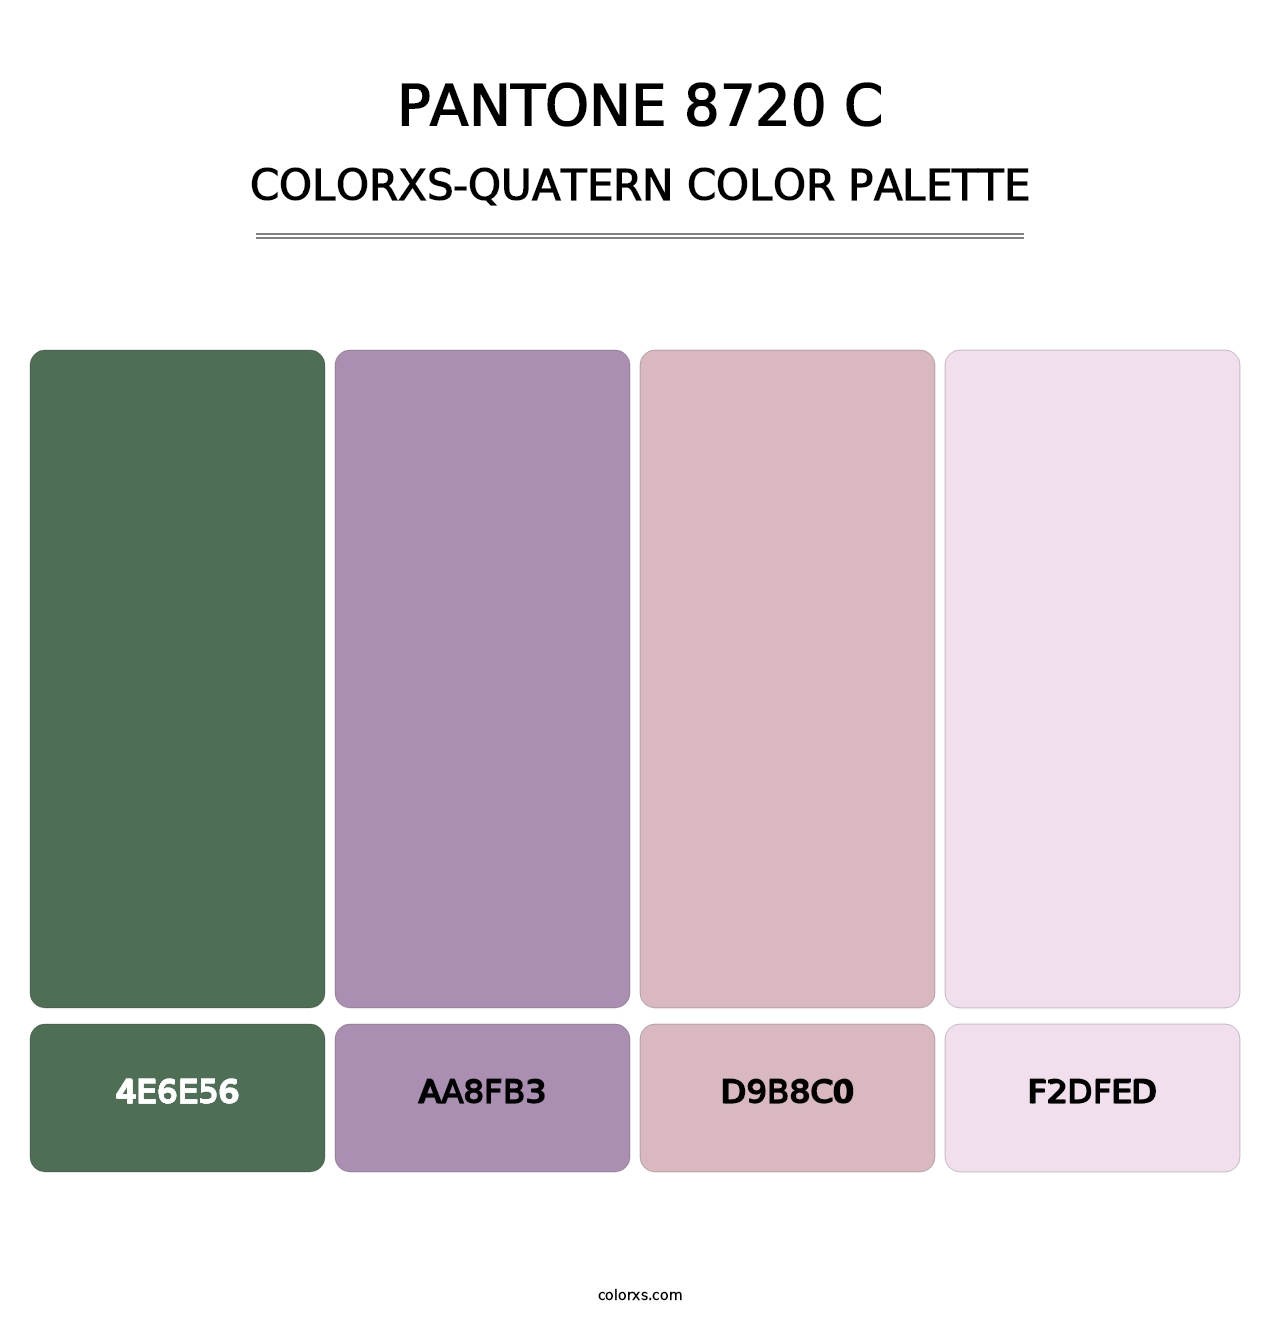 PANTONE 8720 C - Colorxs Quatern Palette